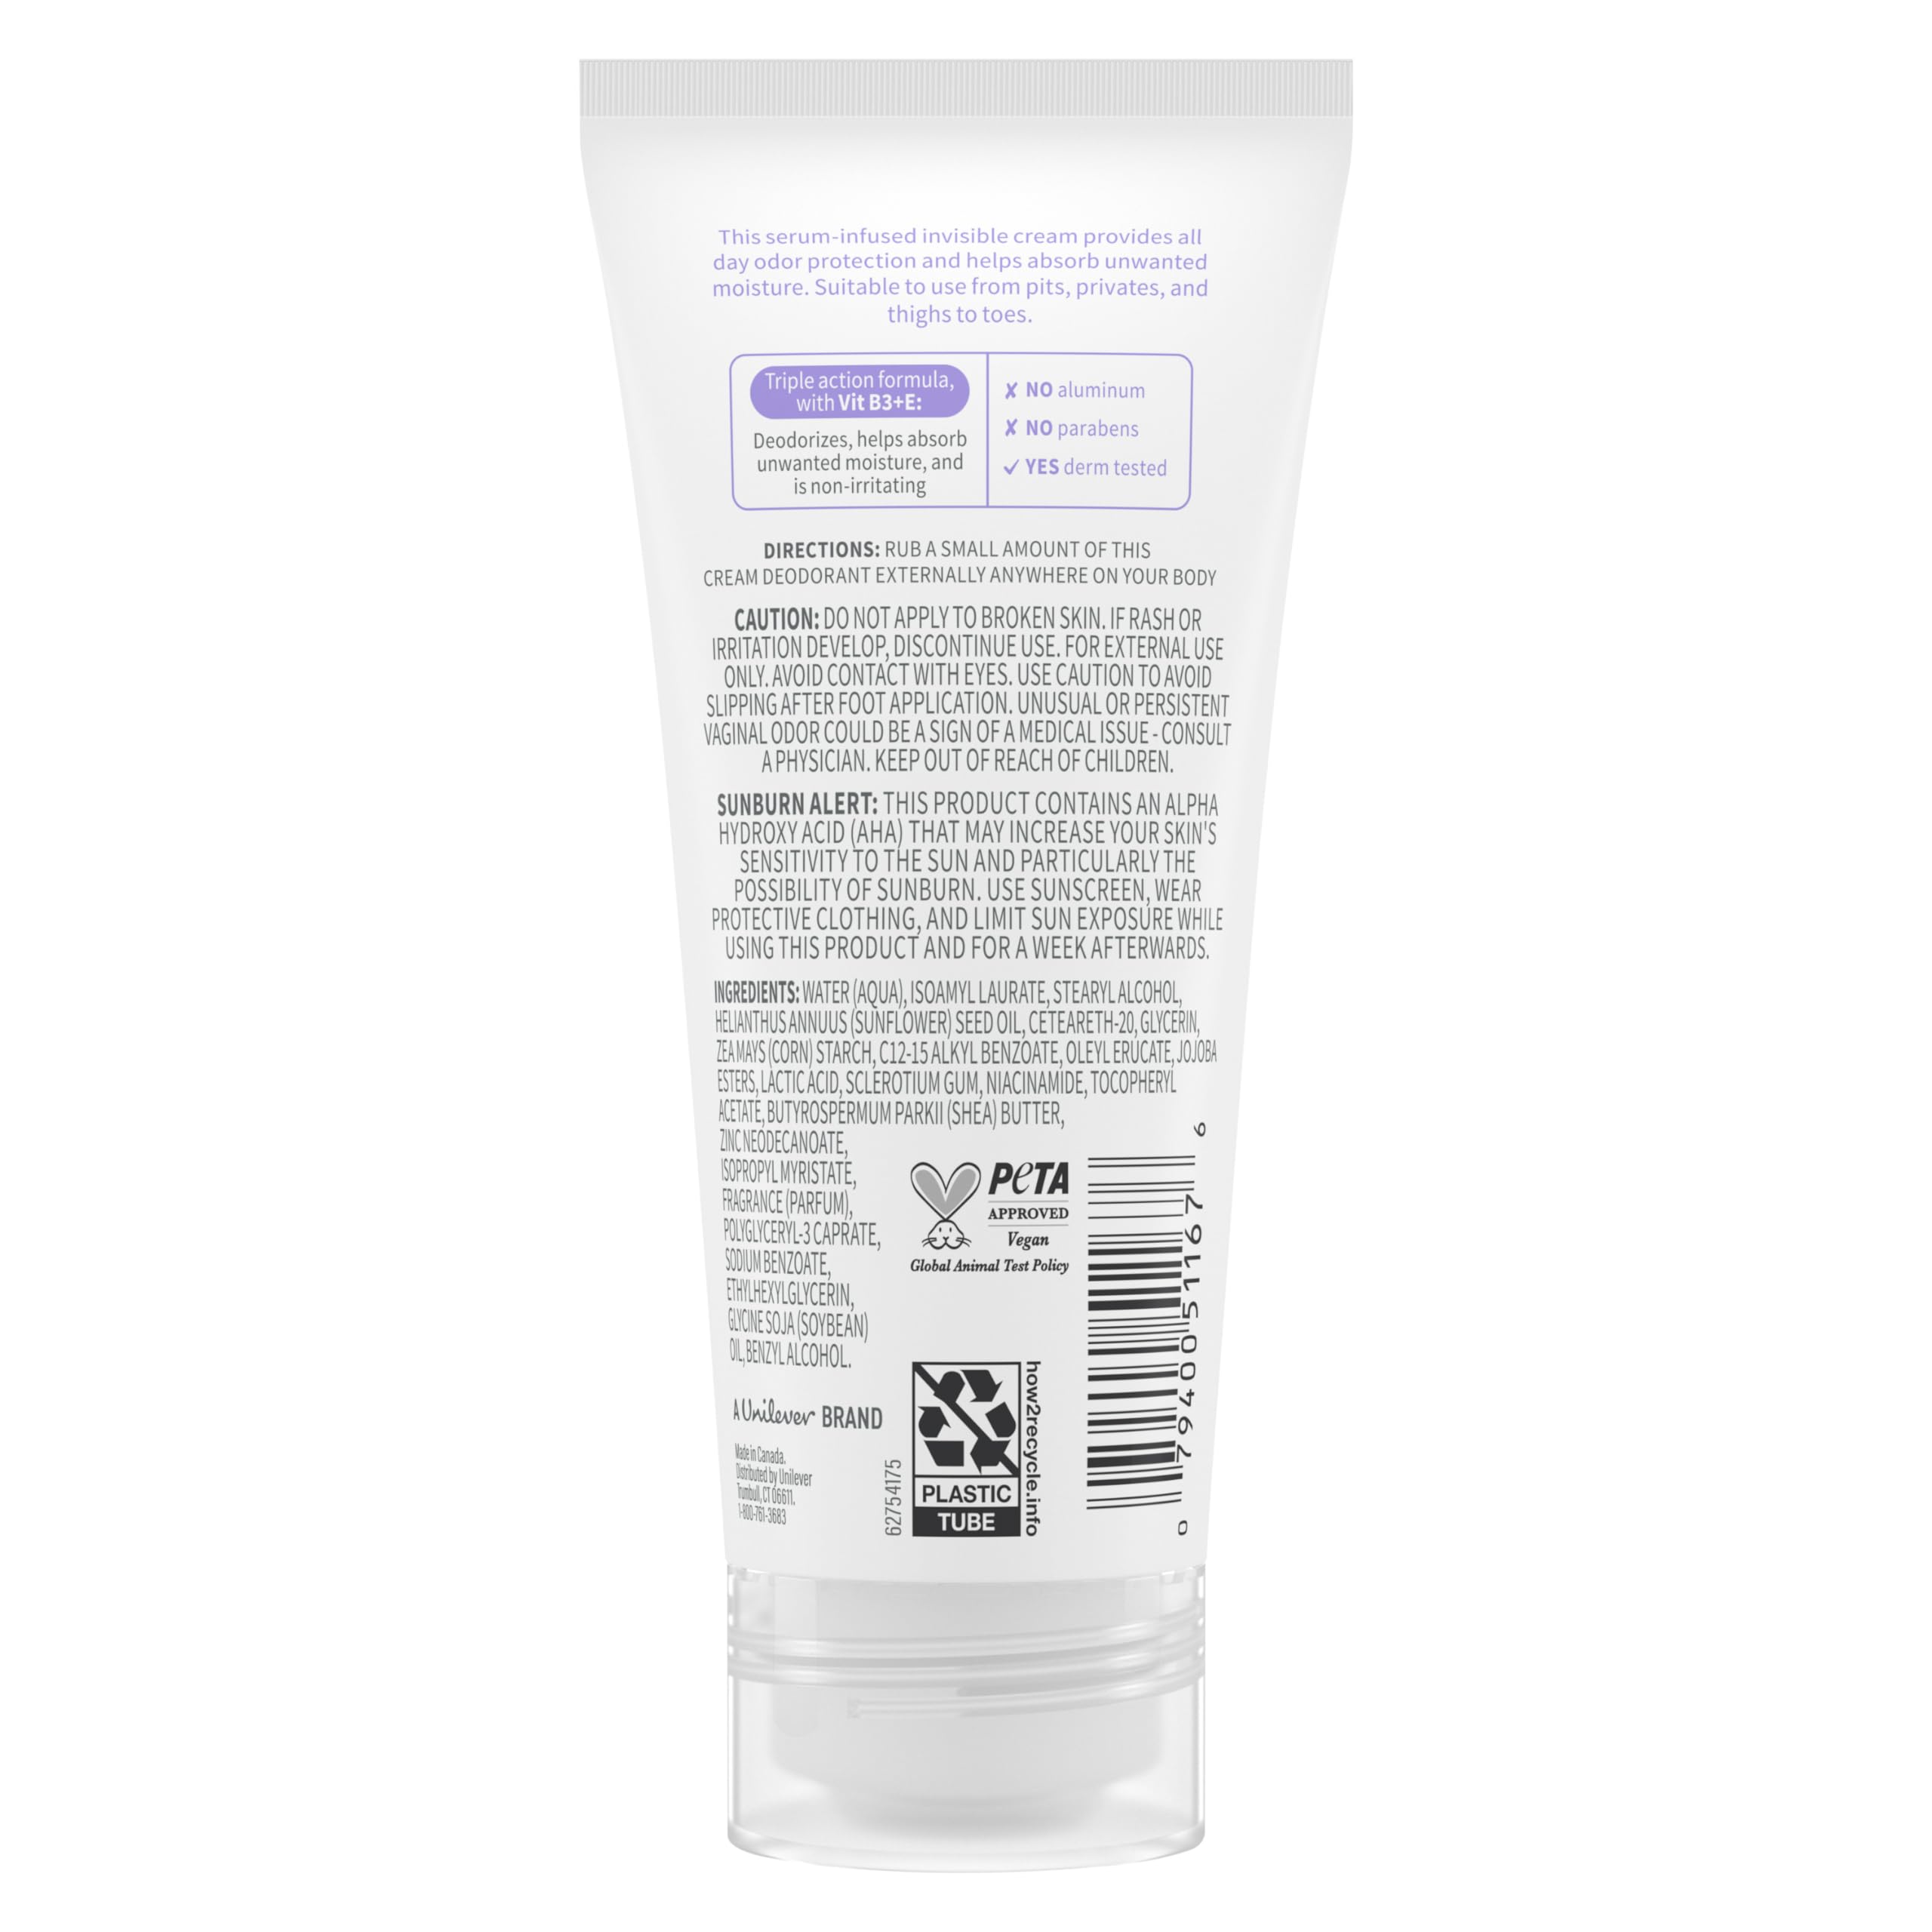 Dove Whole Body Deo Aluminum Free Invisible Cream Deodorant Coconut & Vanilla for Odor Control, 2.5 oz